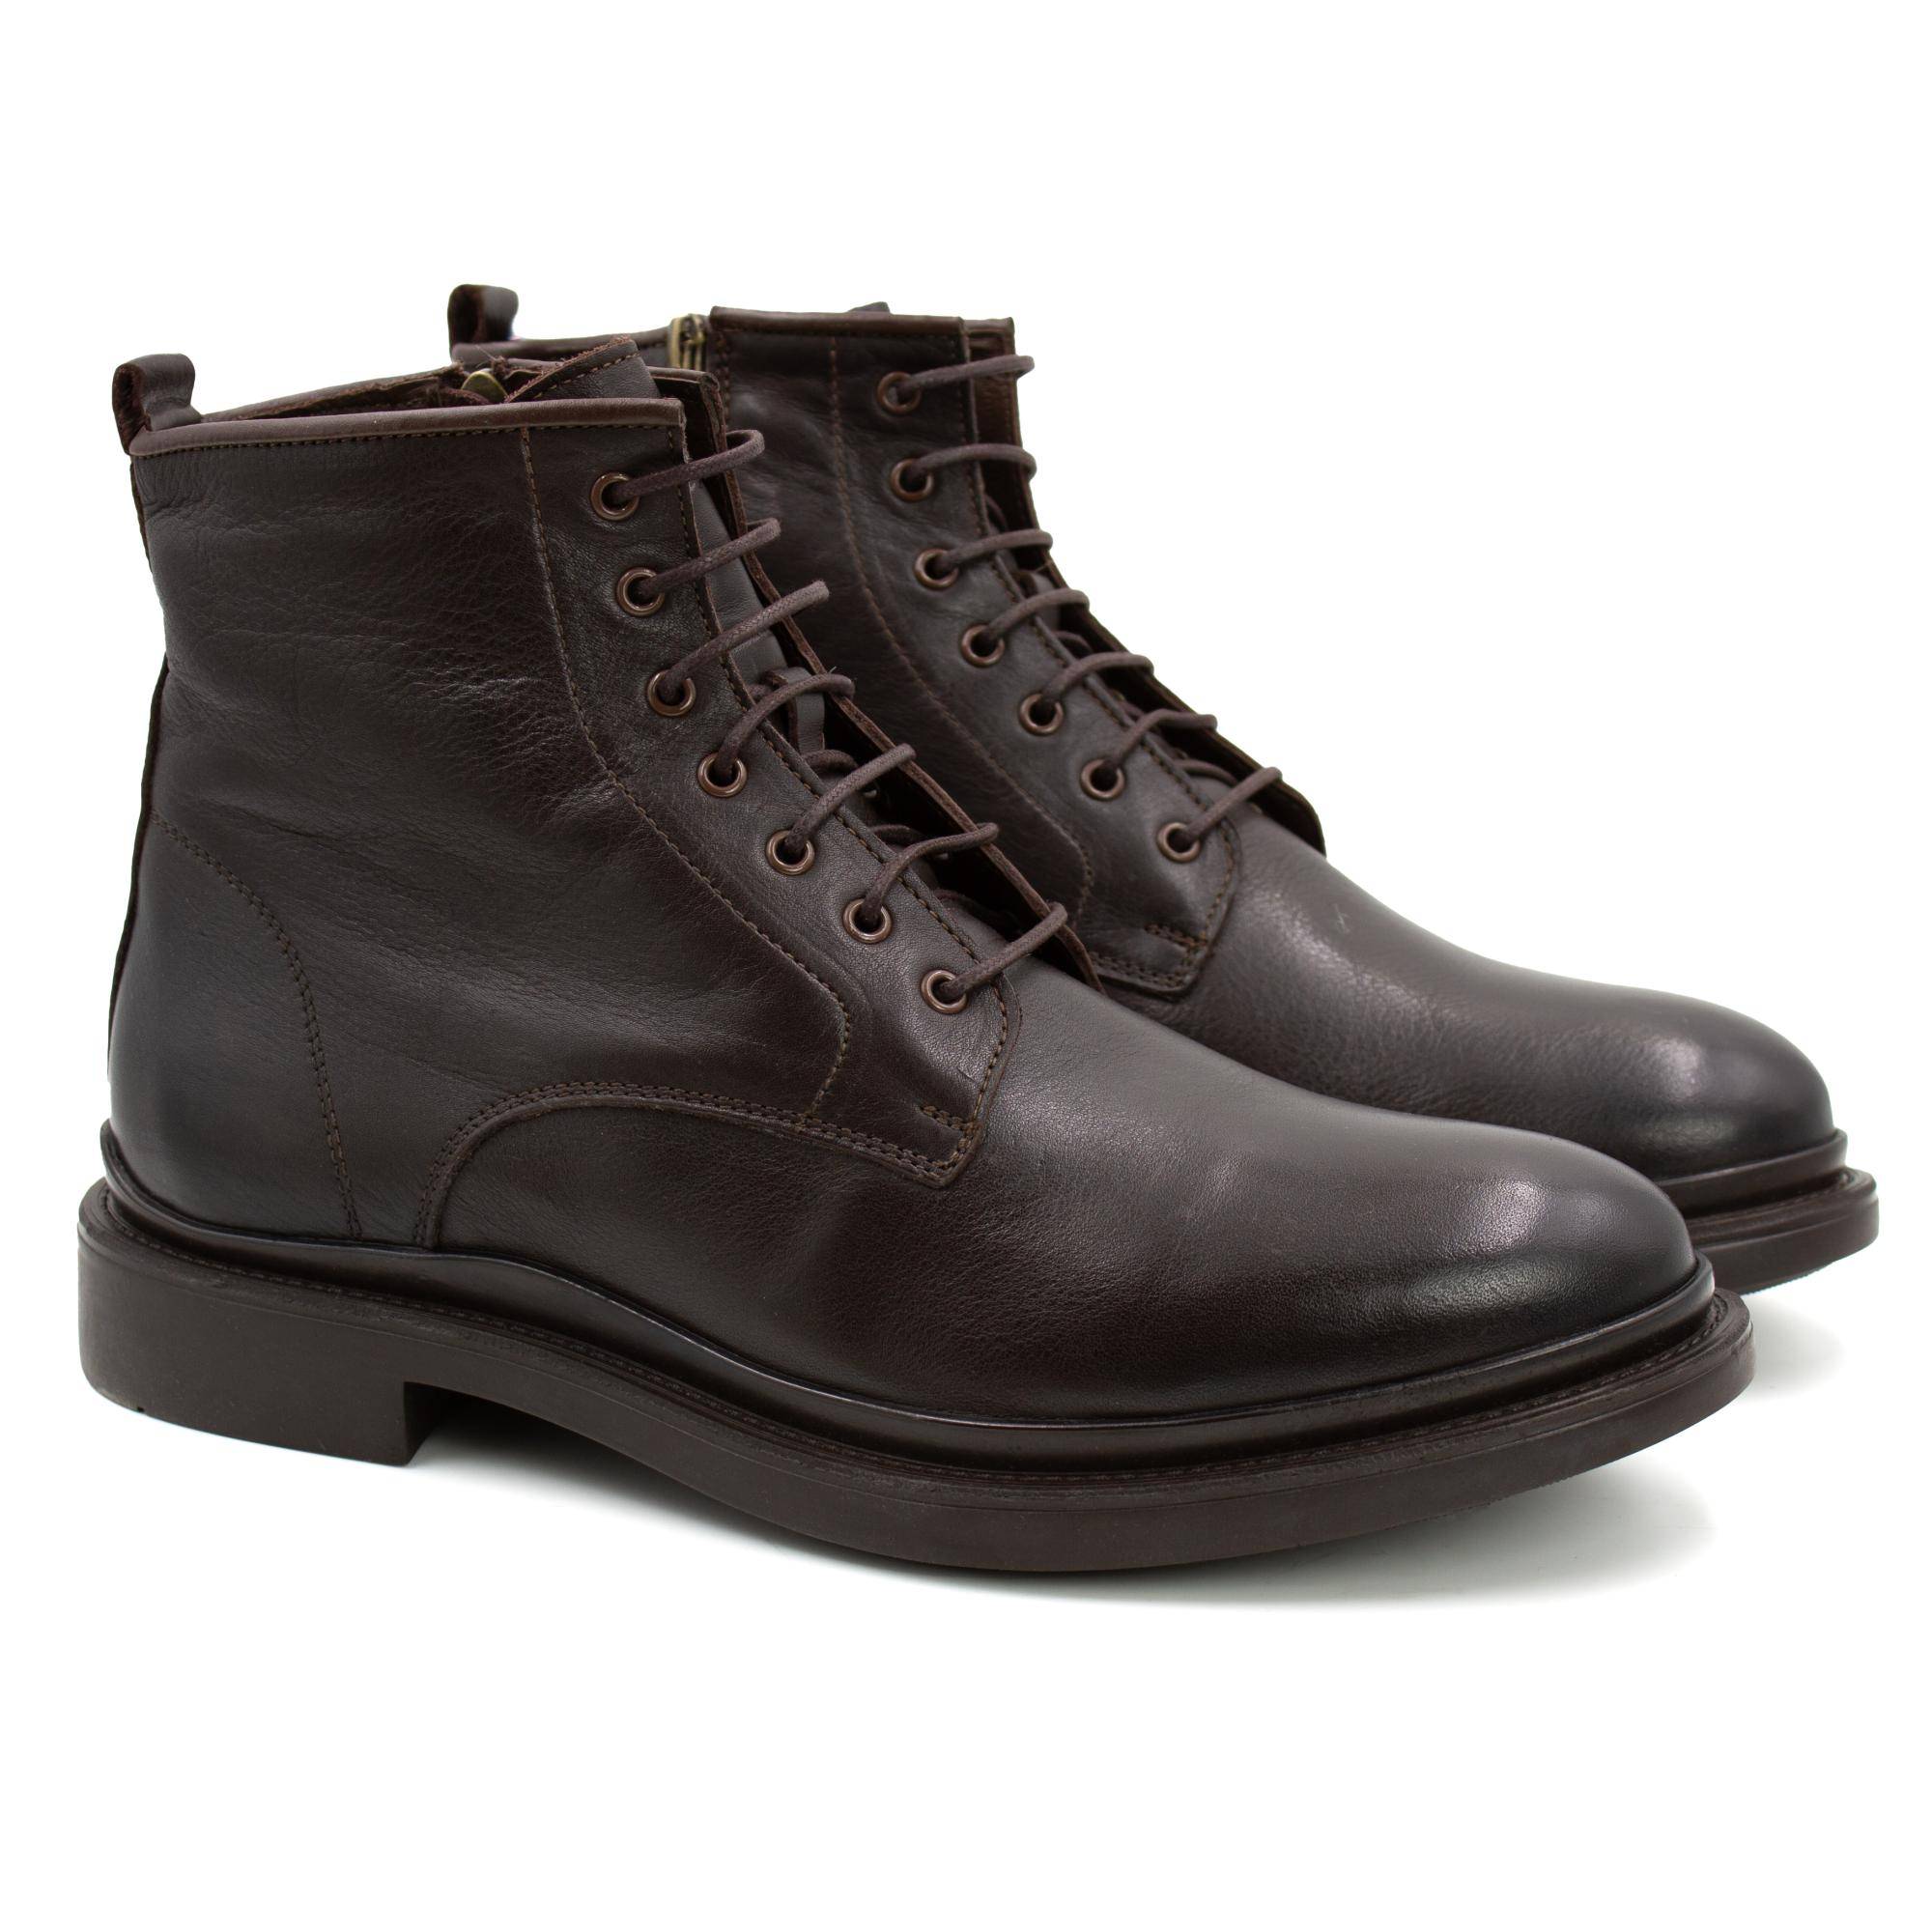 Мужские высокие ботинки Clarks (22203039-4610699), коричневые коричневого цвета